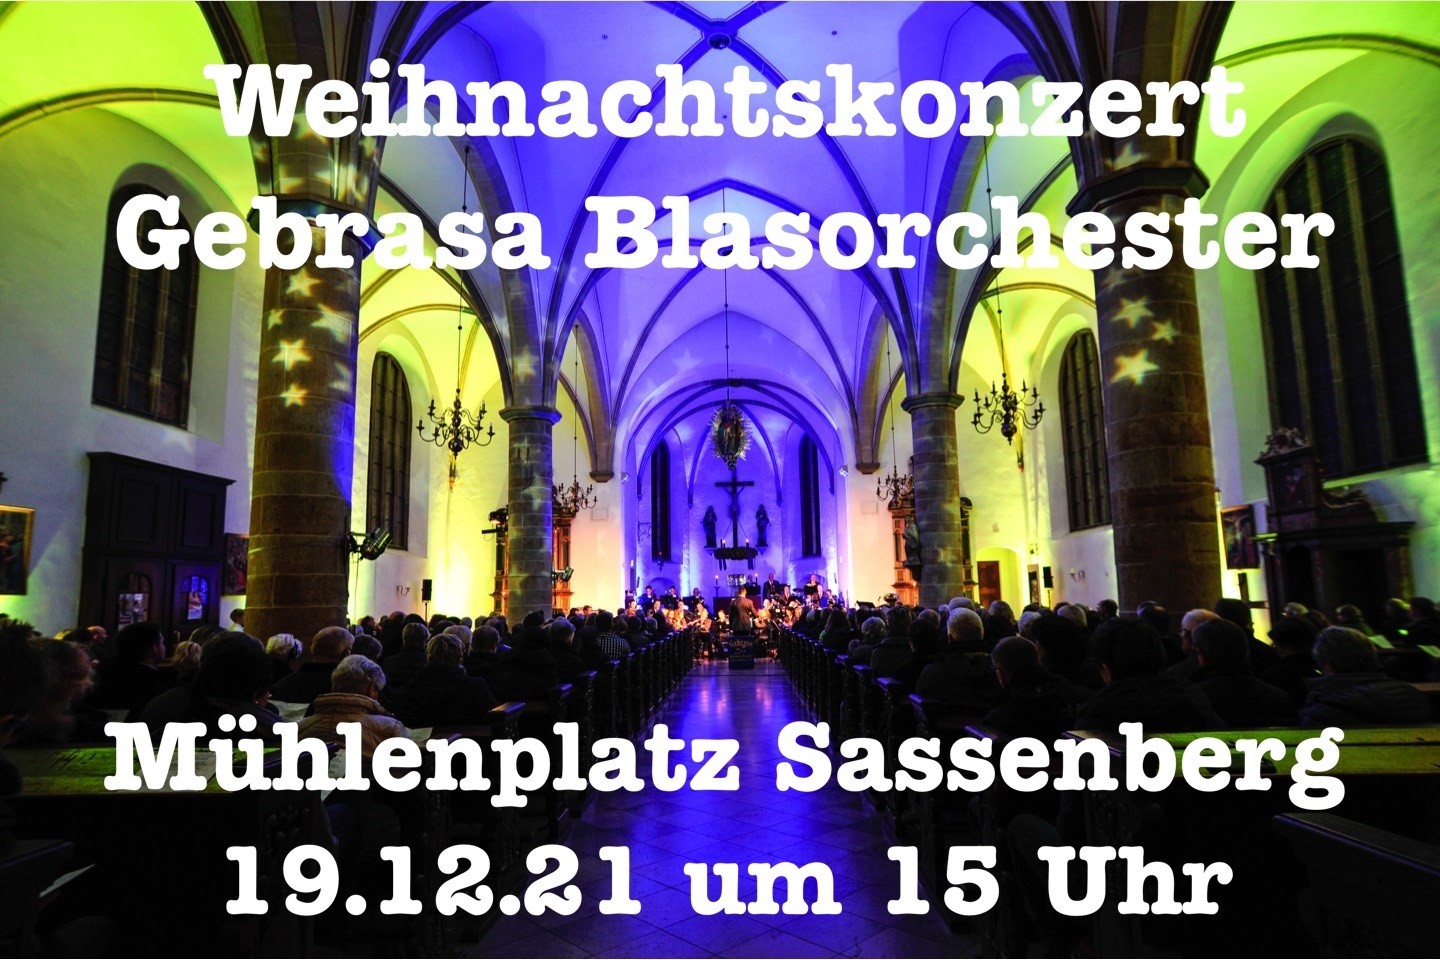 Weihnachtskonzert,Gebrasa Blasorchester,Sassenberg,Mühlenplatz,verschoben,